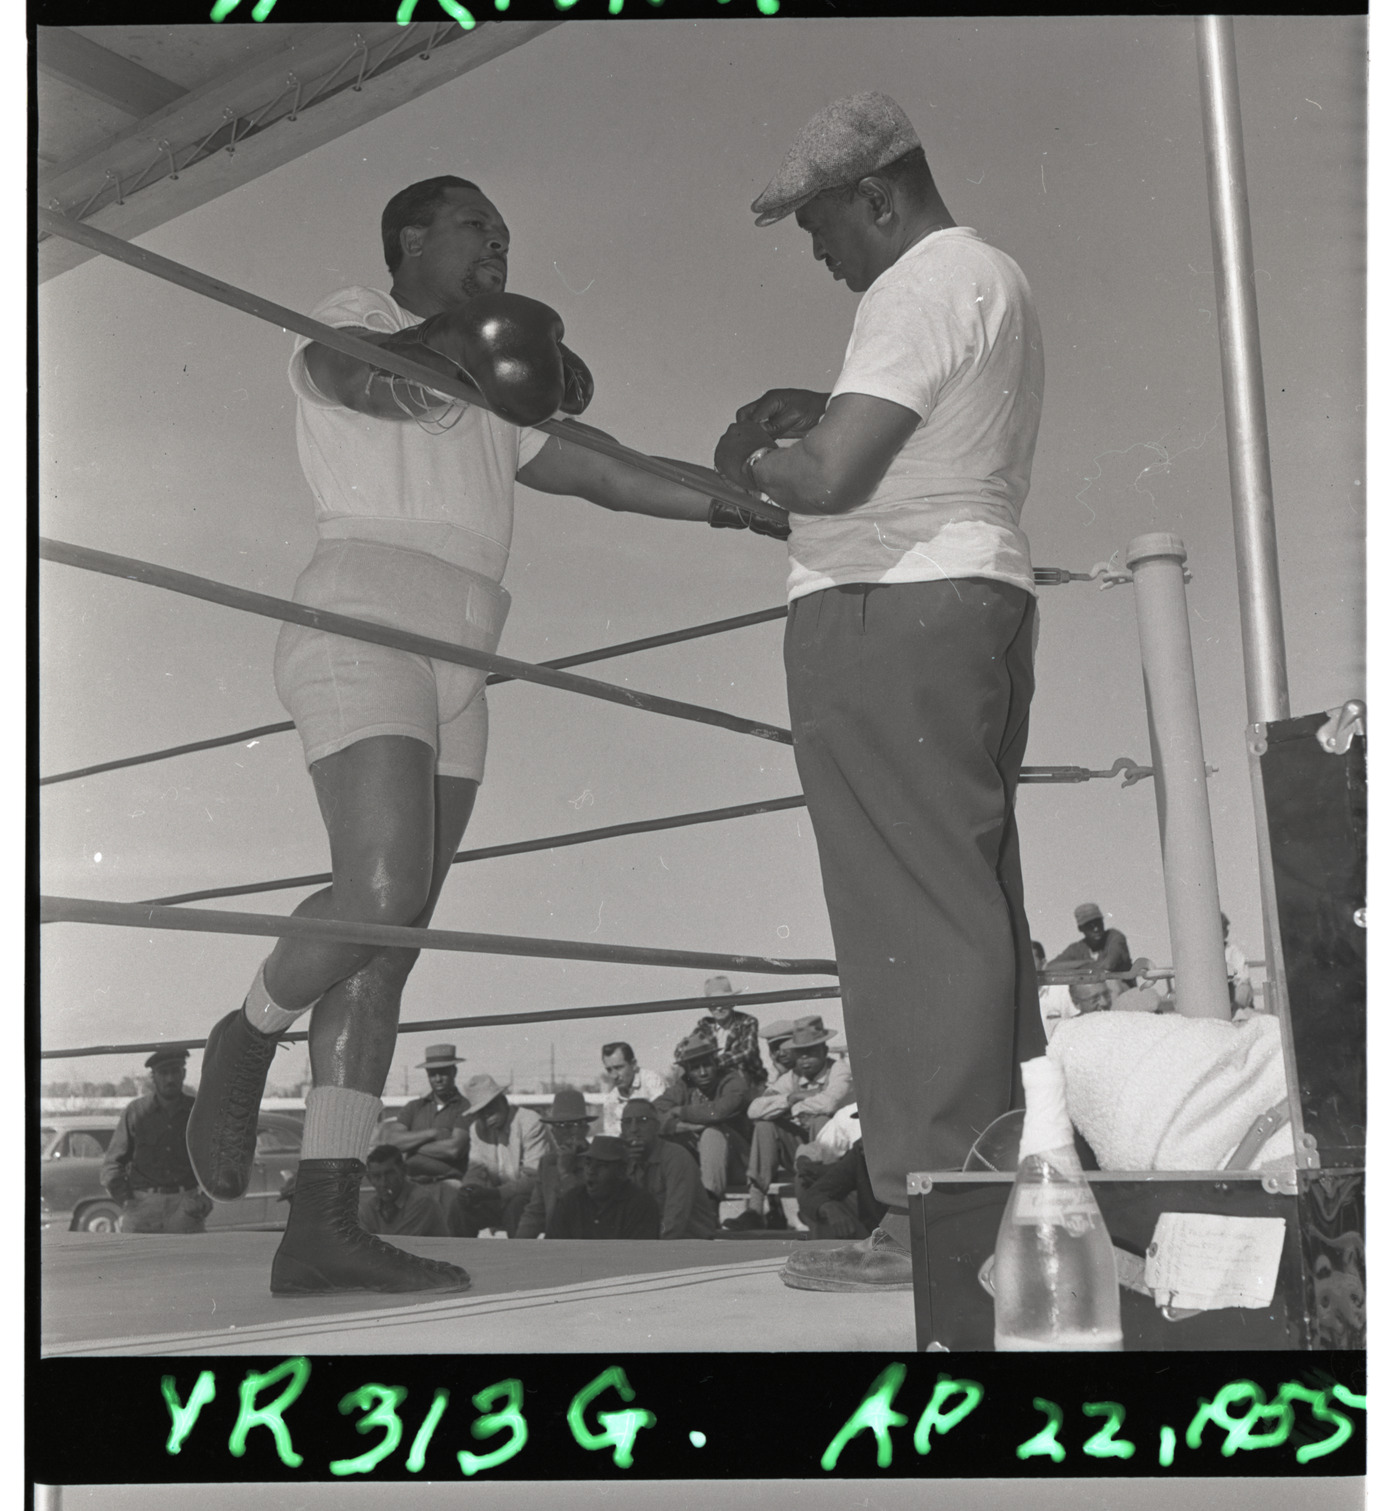 Boxing match, Image 03